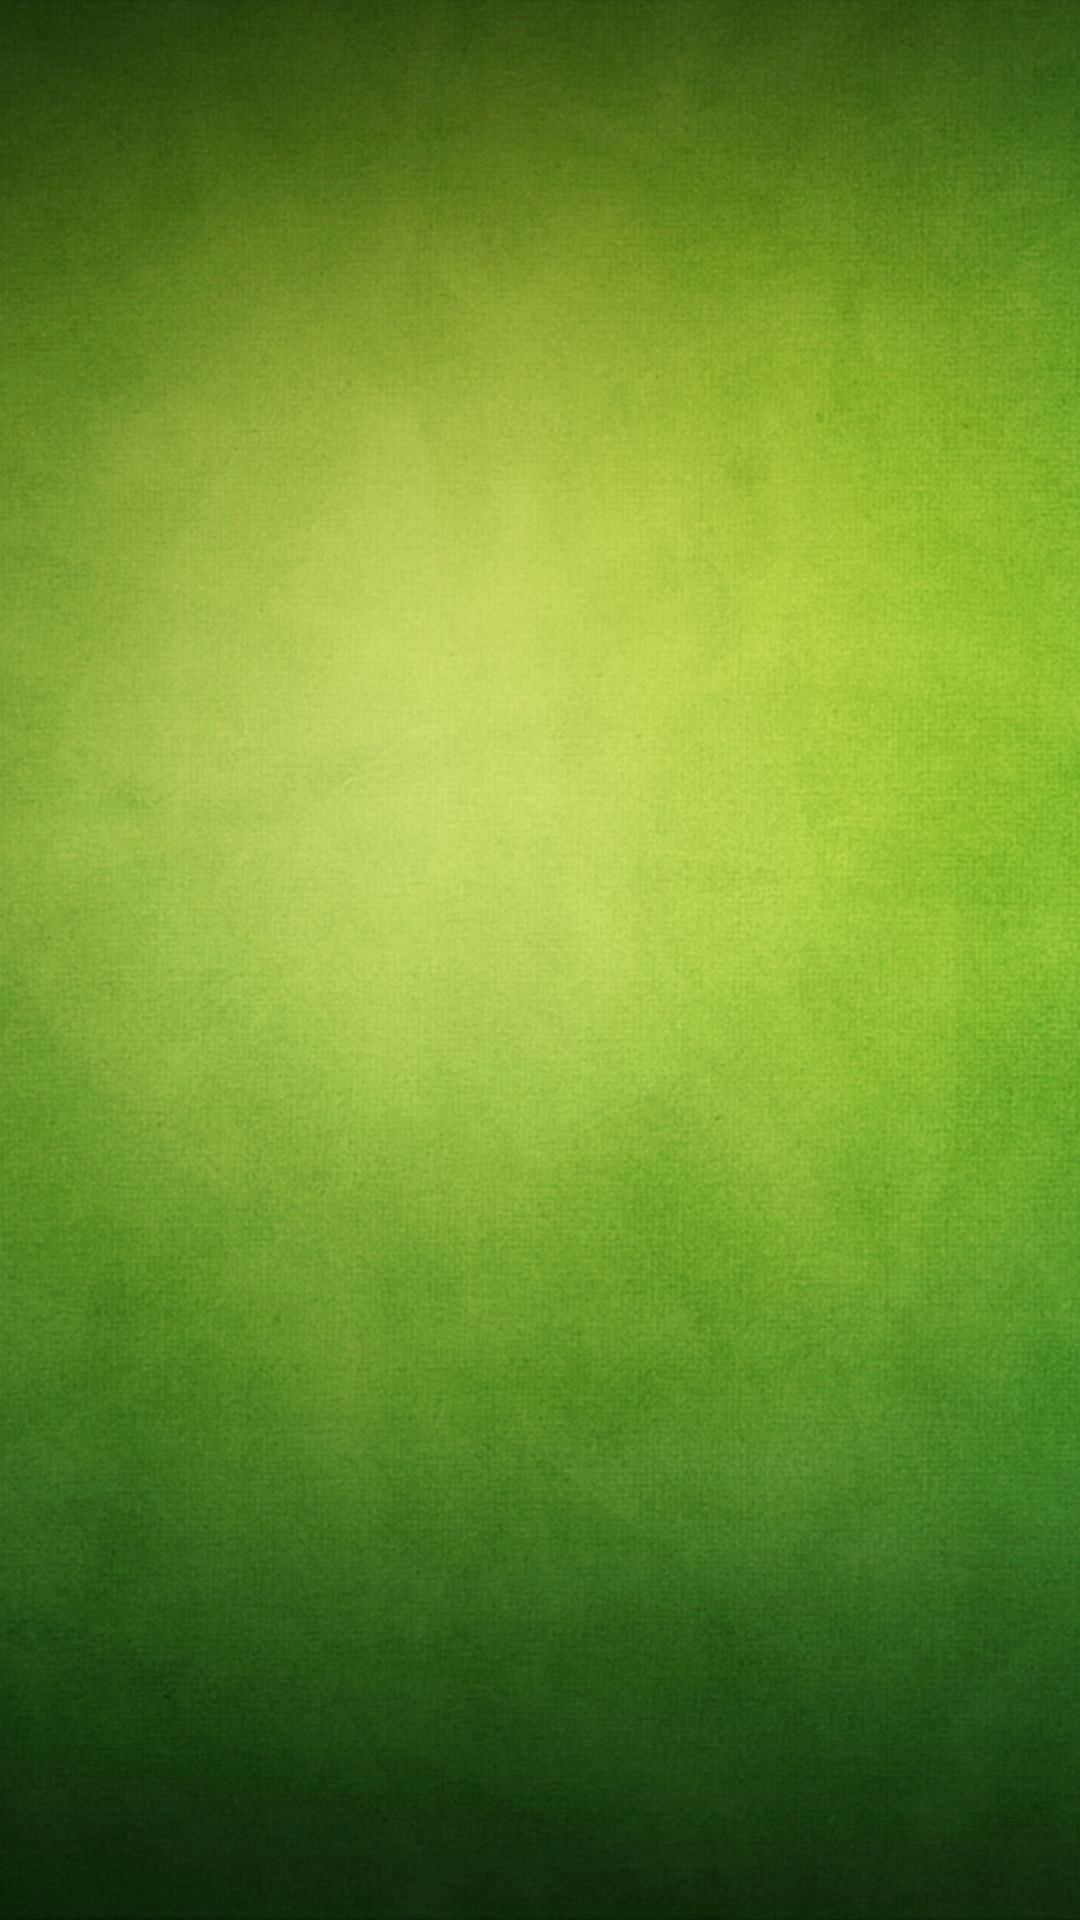 Green Wallpaper Iphone 7 - HD Wallpaper 